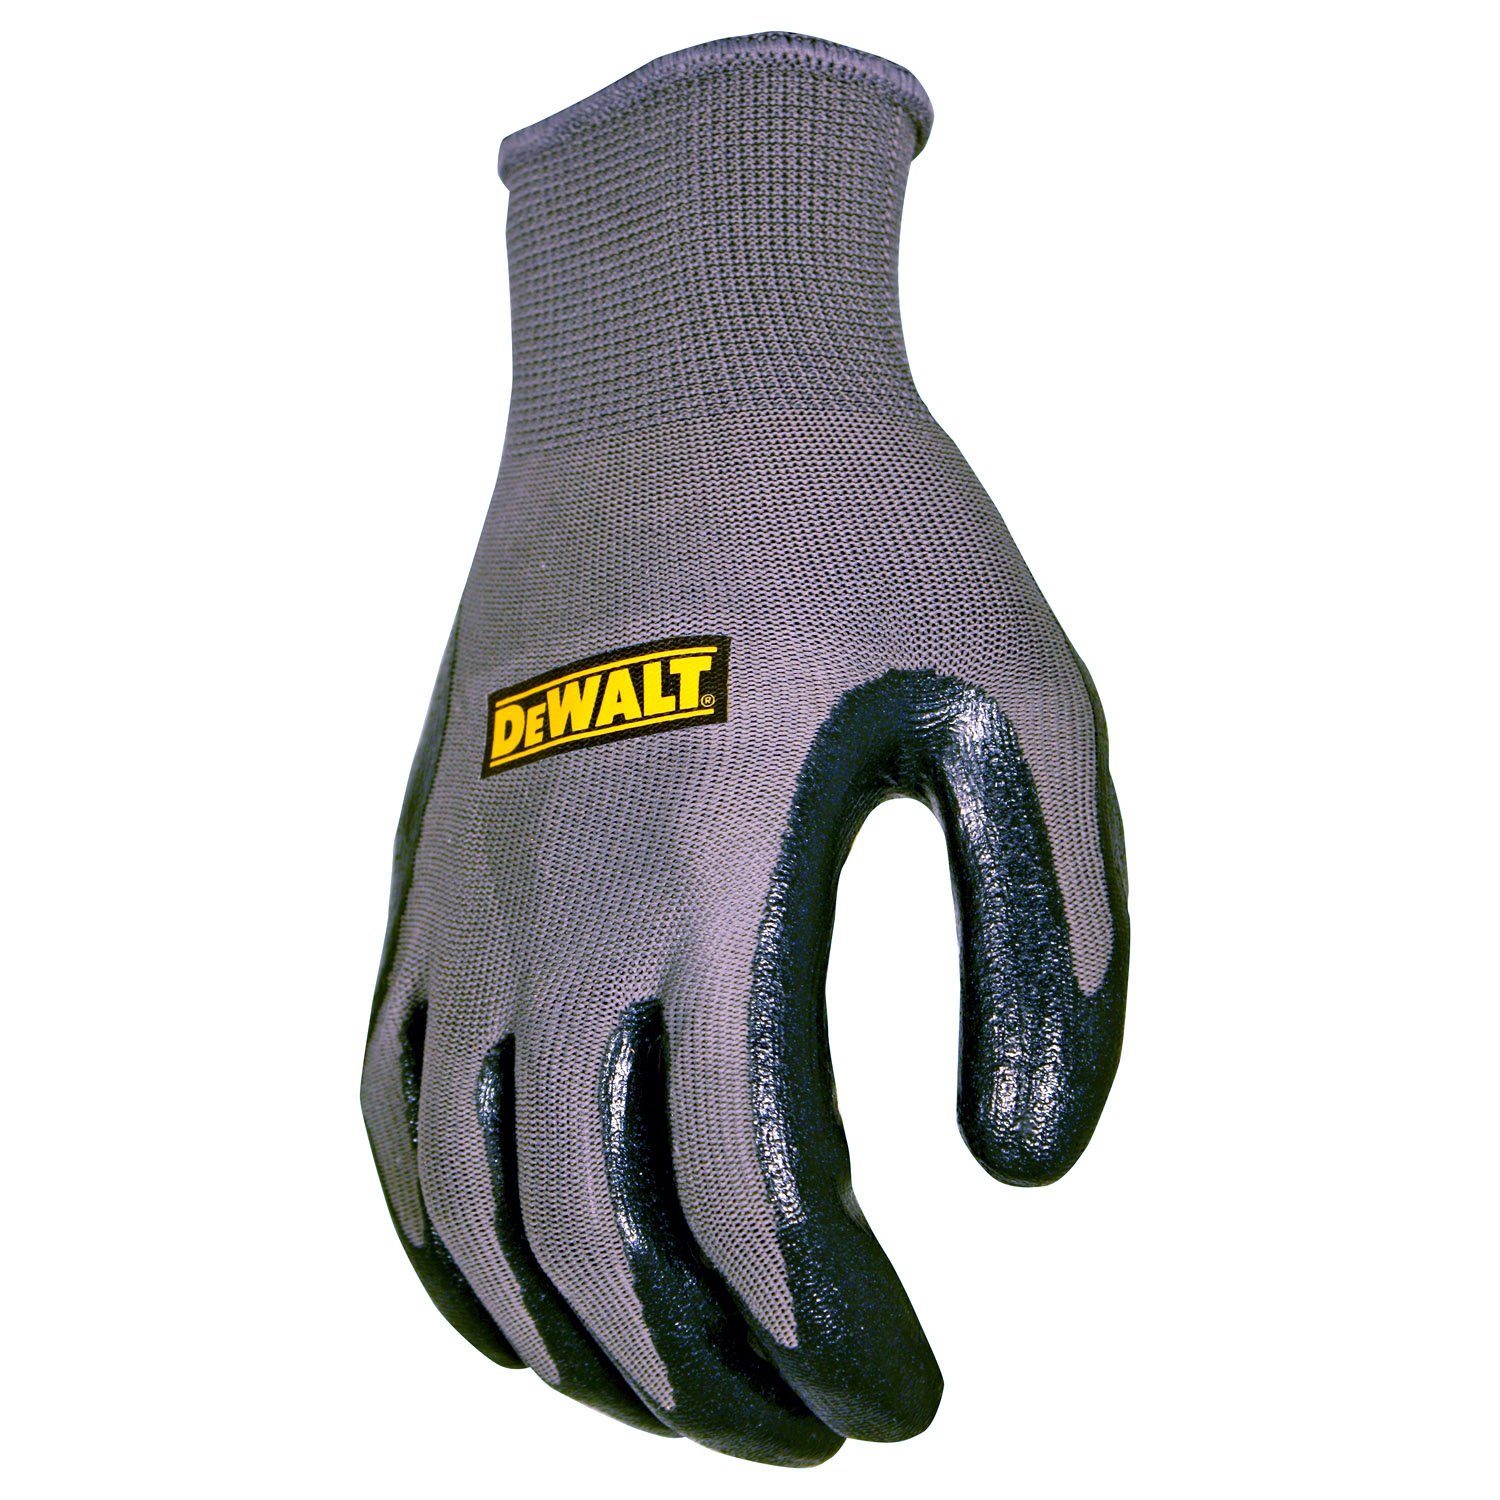 Nitril L DPG66LEU Arbeitsschutz (Nr. Arbeitshandschuh, Arbeitshandschuh Schutzhandschuhe, DeWalt 10) Gartenhandschuh, Montage-Handschuhe Größe